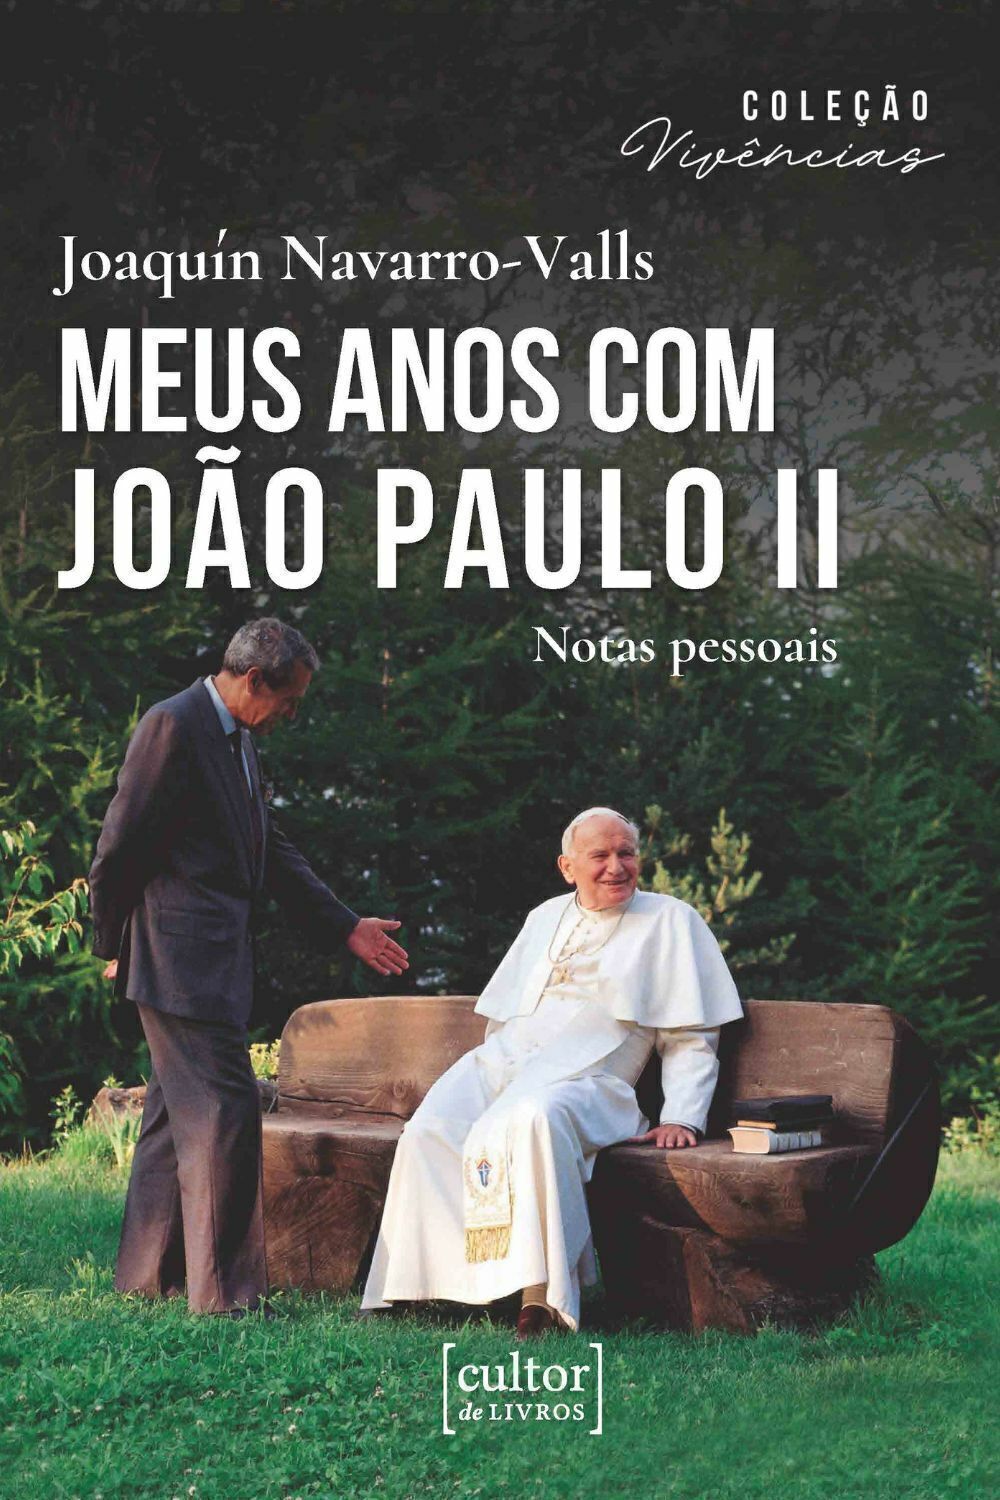 Meus anos com João Paulo II - Notas pessoais